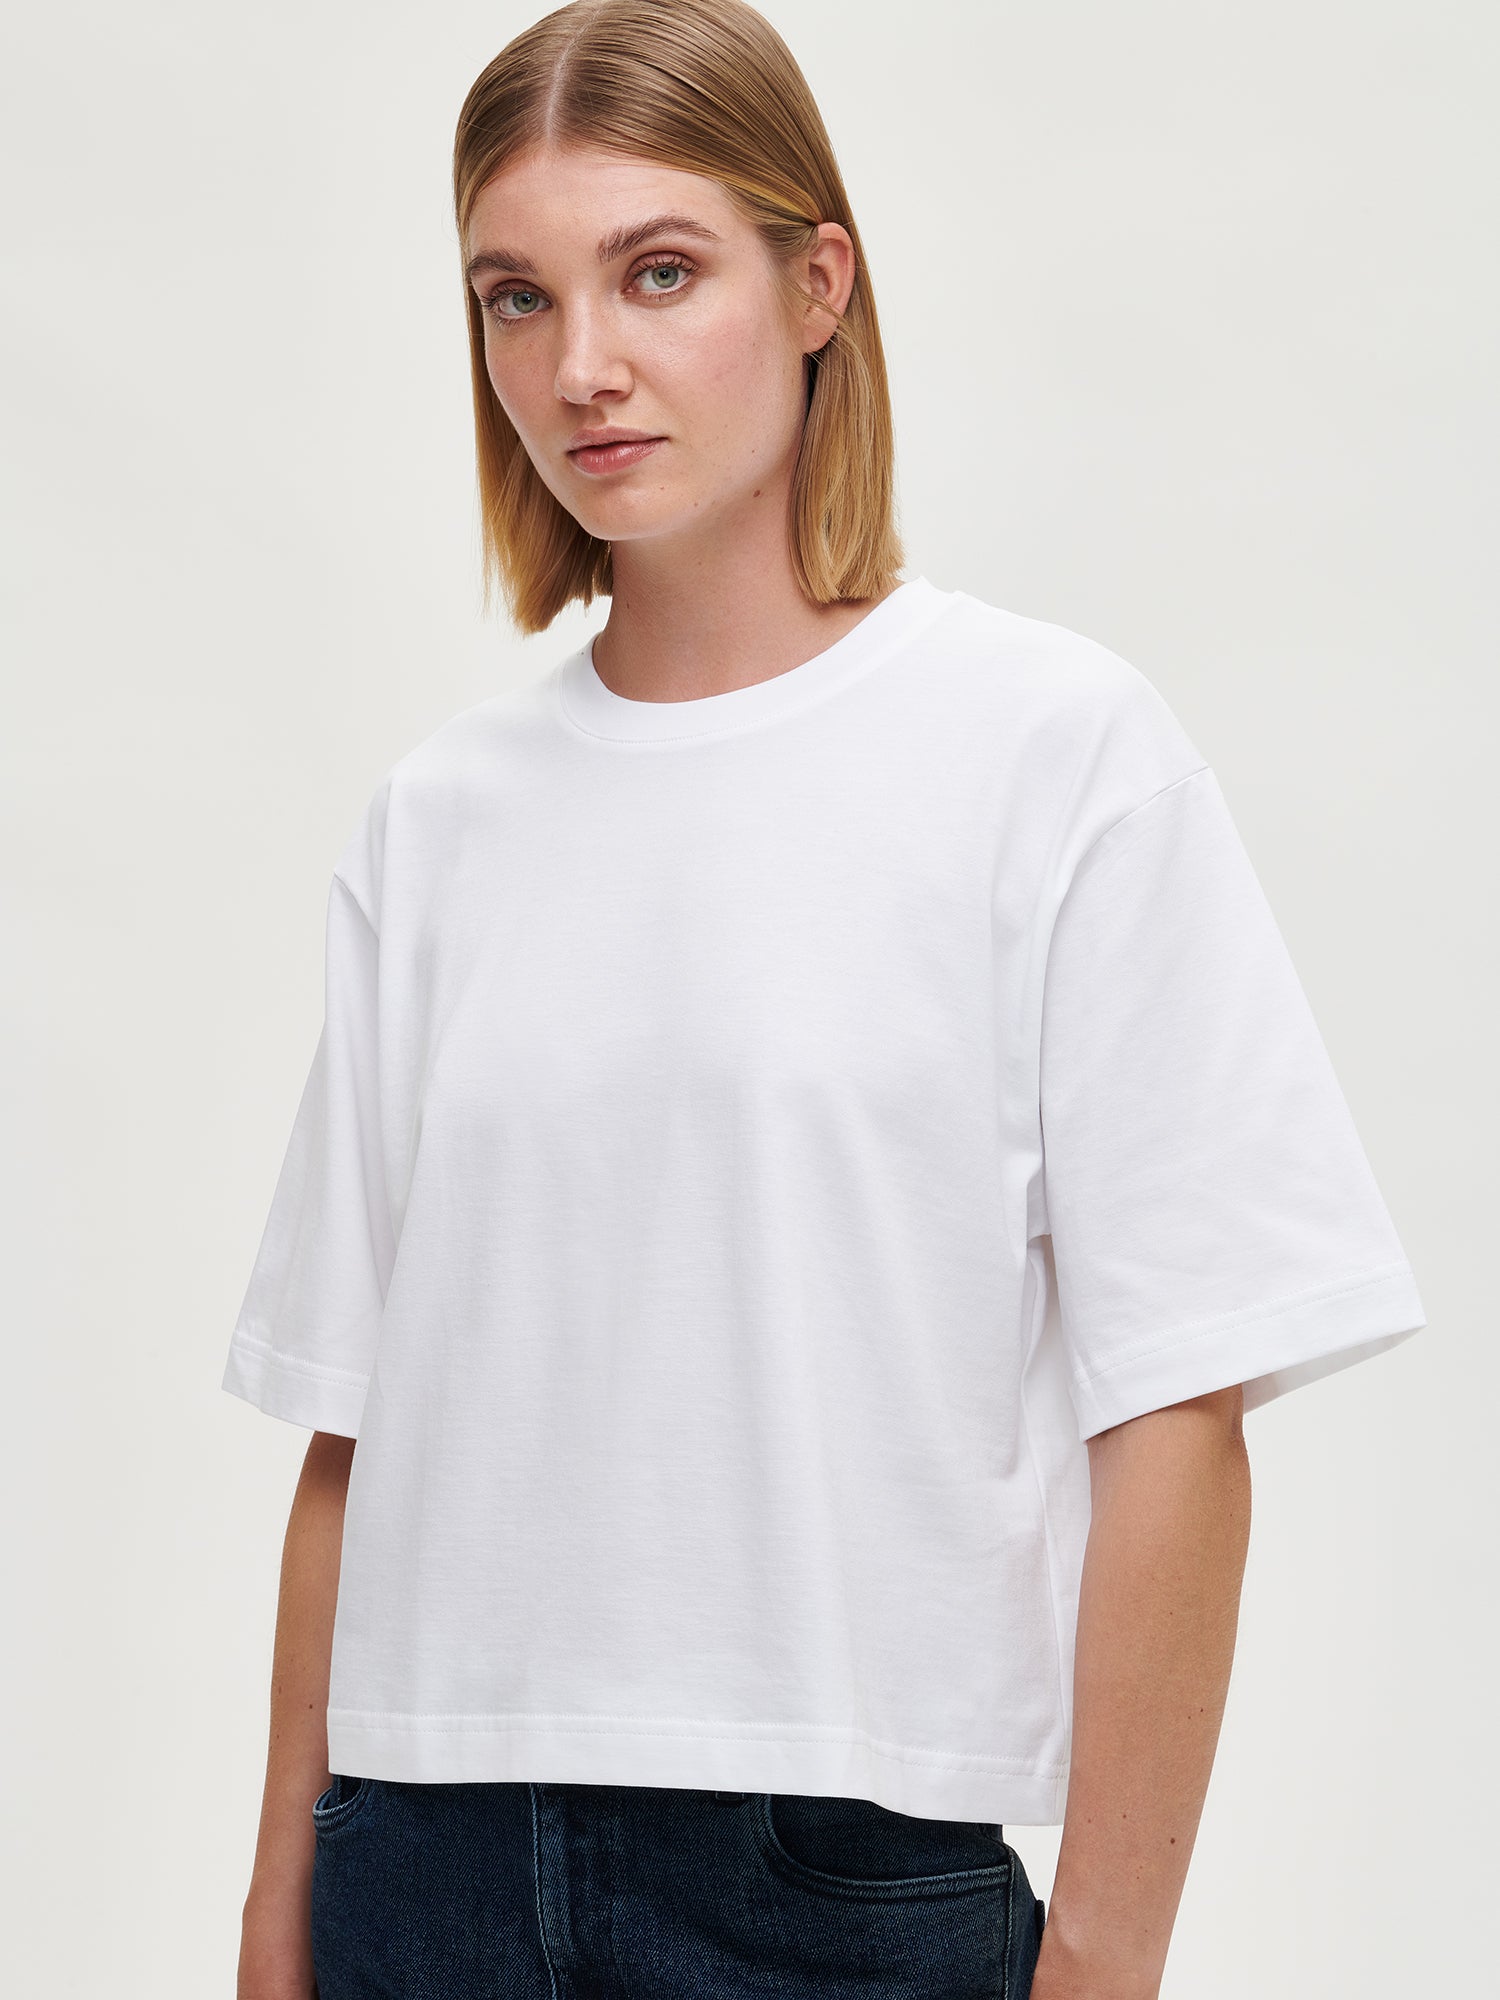 Nanson naisten laadukas valkoinen Kroppi-t-paita mallin päällä edestä lähikuvana.